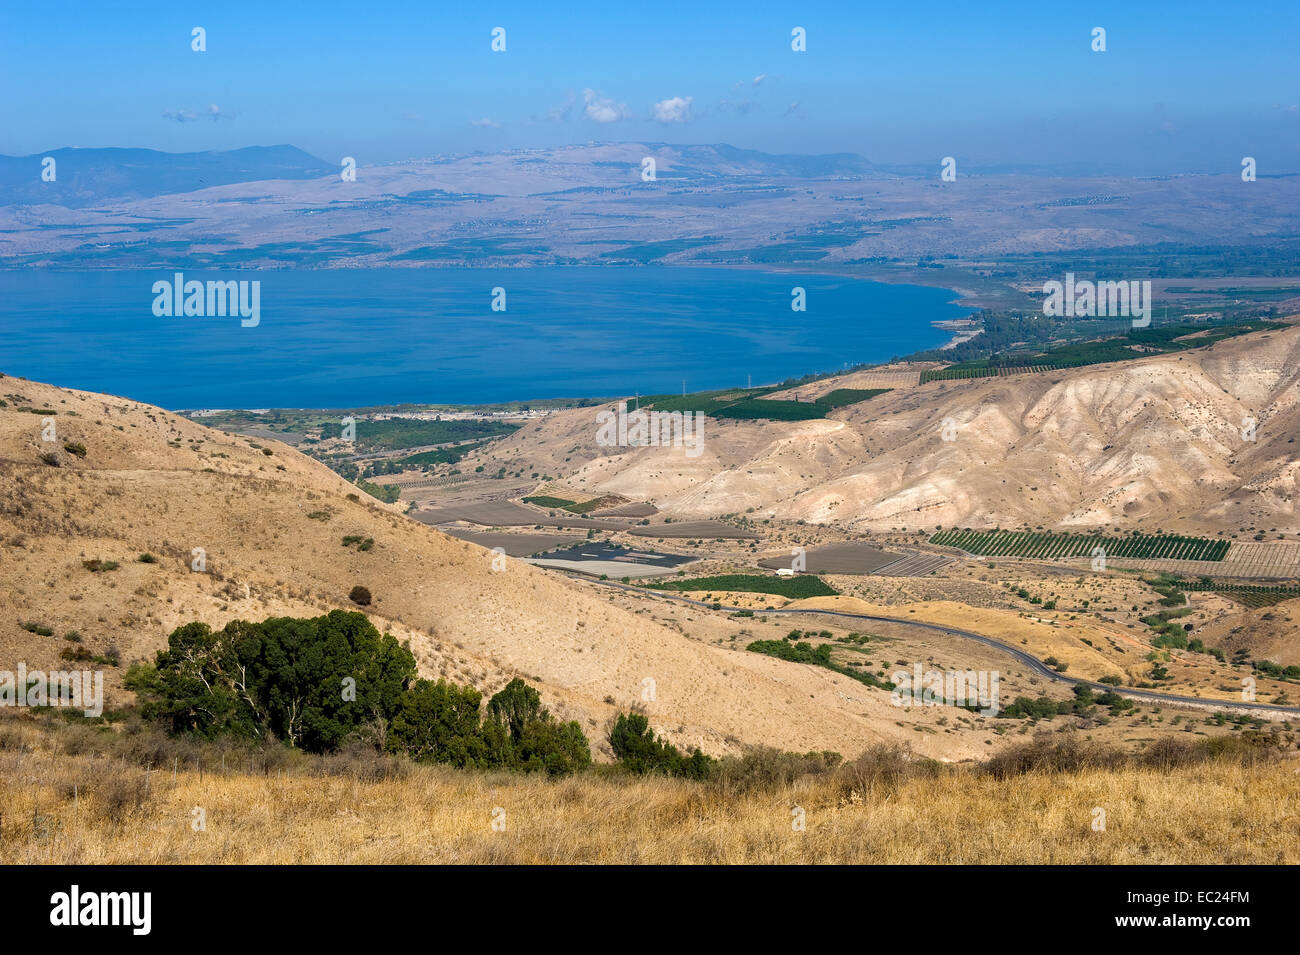 La partie nord de la mer de Galilée en Israël vu depuis les hauteurs du Golan Banque D'Images